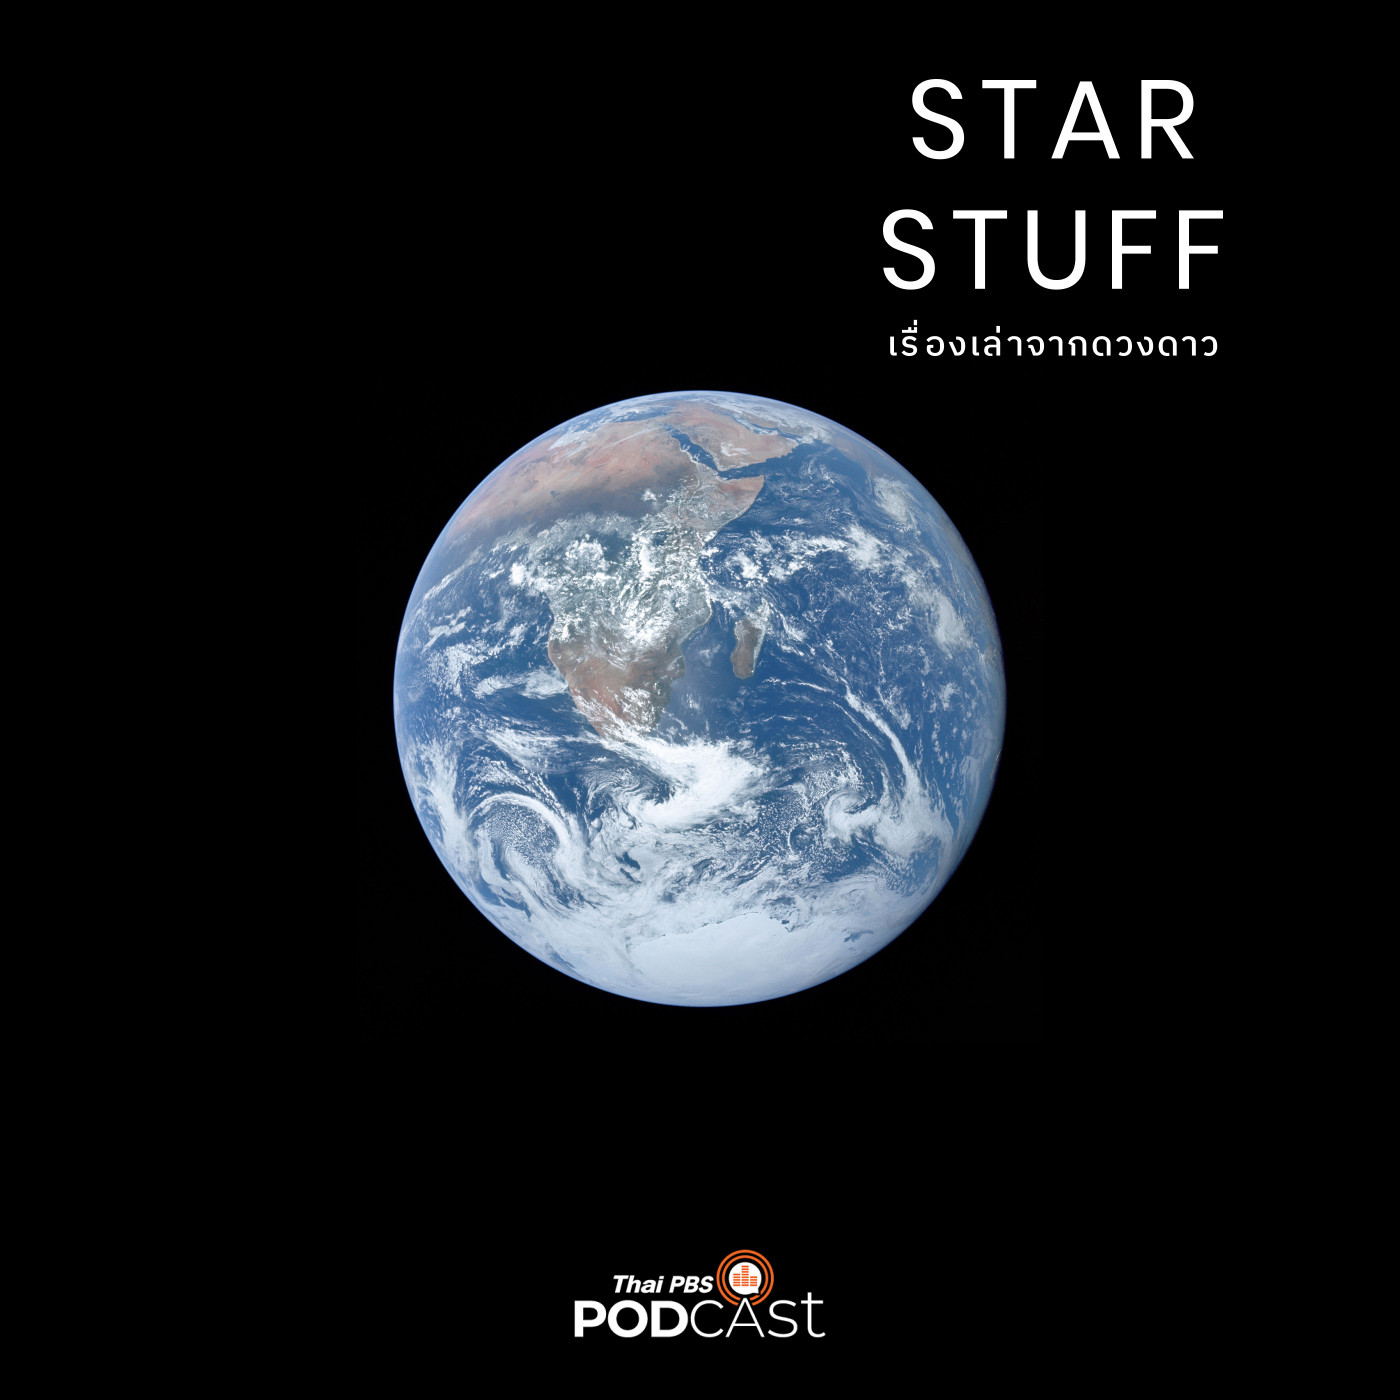 Starstuff เรื่องเล่าจากดวงดาว EP. 137: ทำไมเราไม่พบสิ่งมีชีวิตทรงภูมิปัญญาอื่น